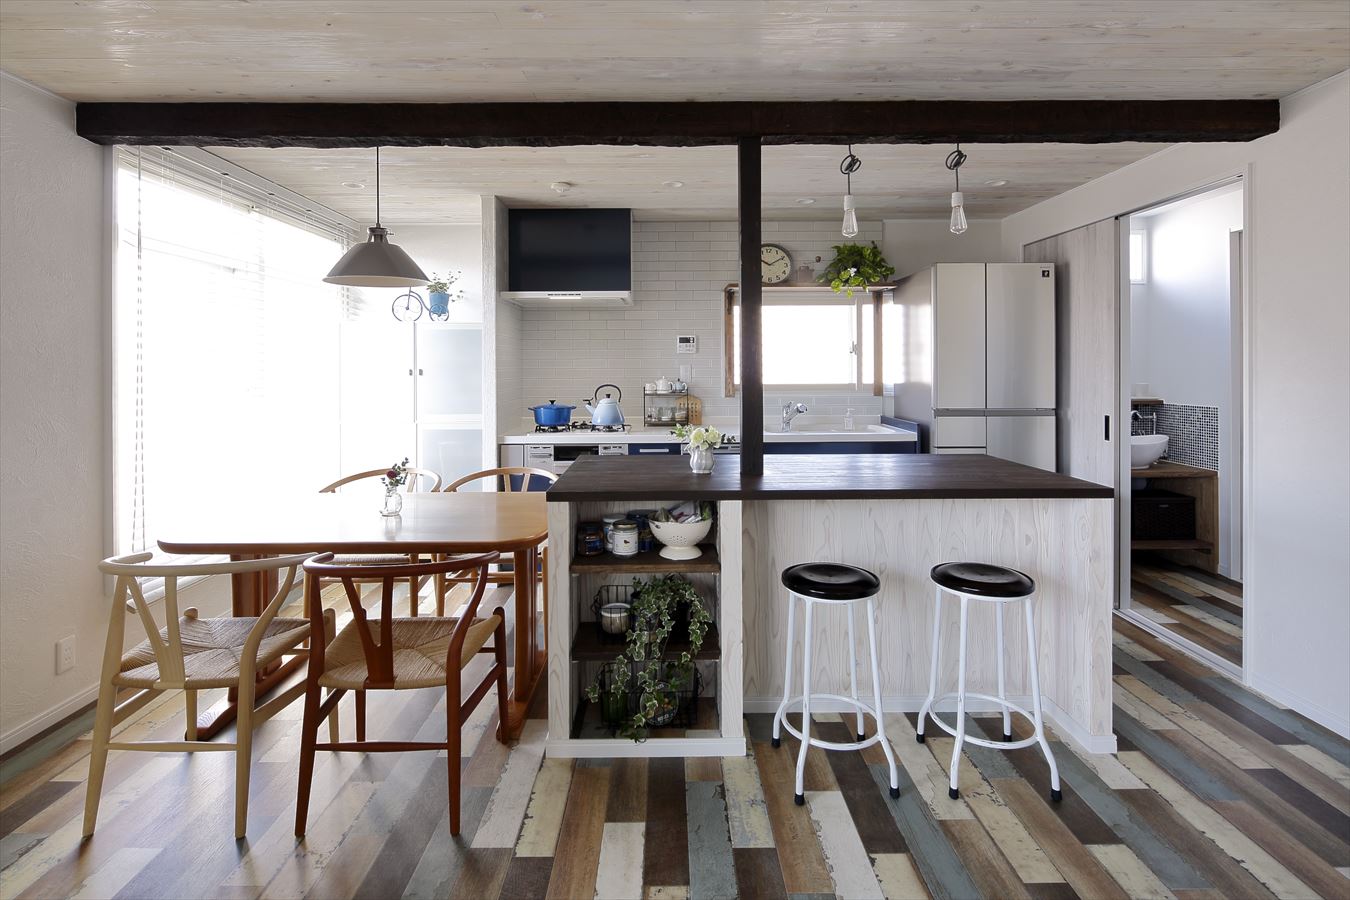 床材と飾り梁でダイニングキッチンをアートな空間に